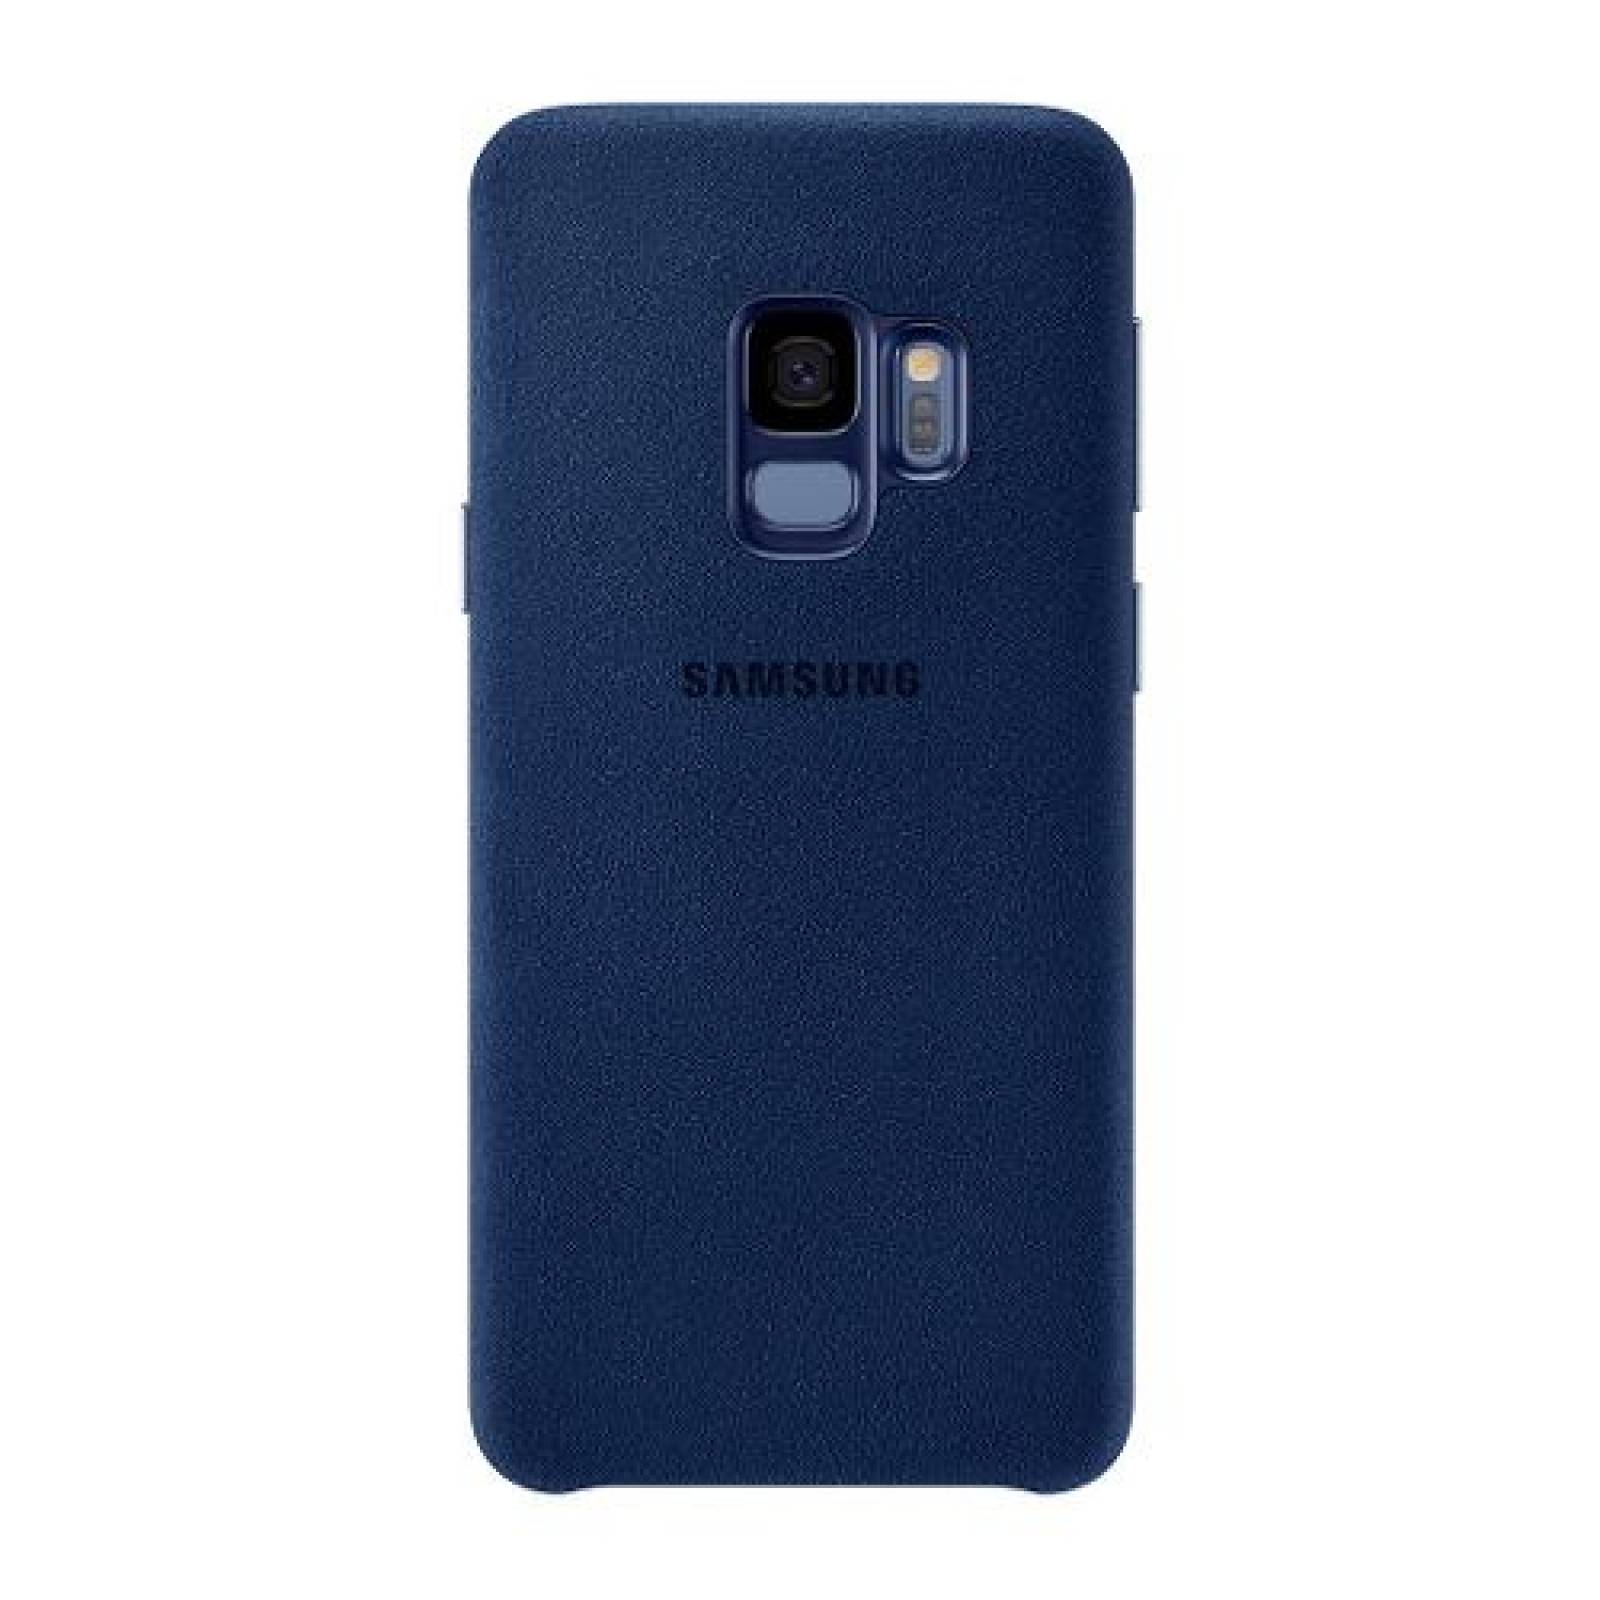 Carcasa Protectora Galaxy S9 Alcantara Cover Azul Samsung